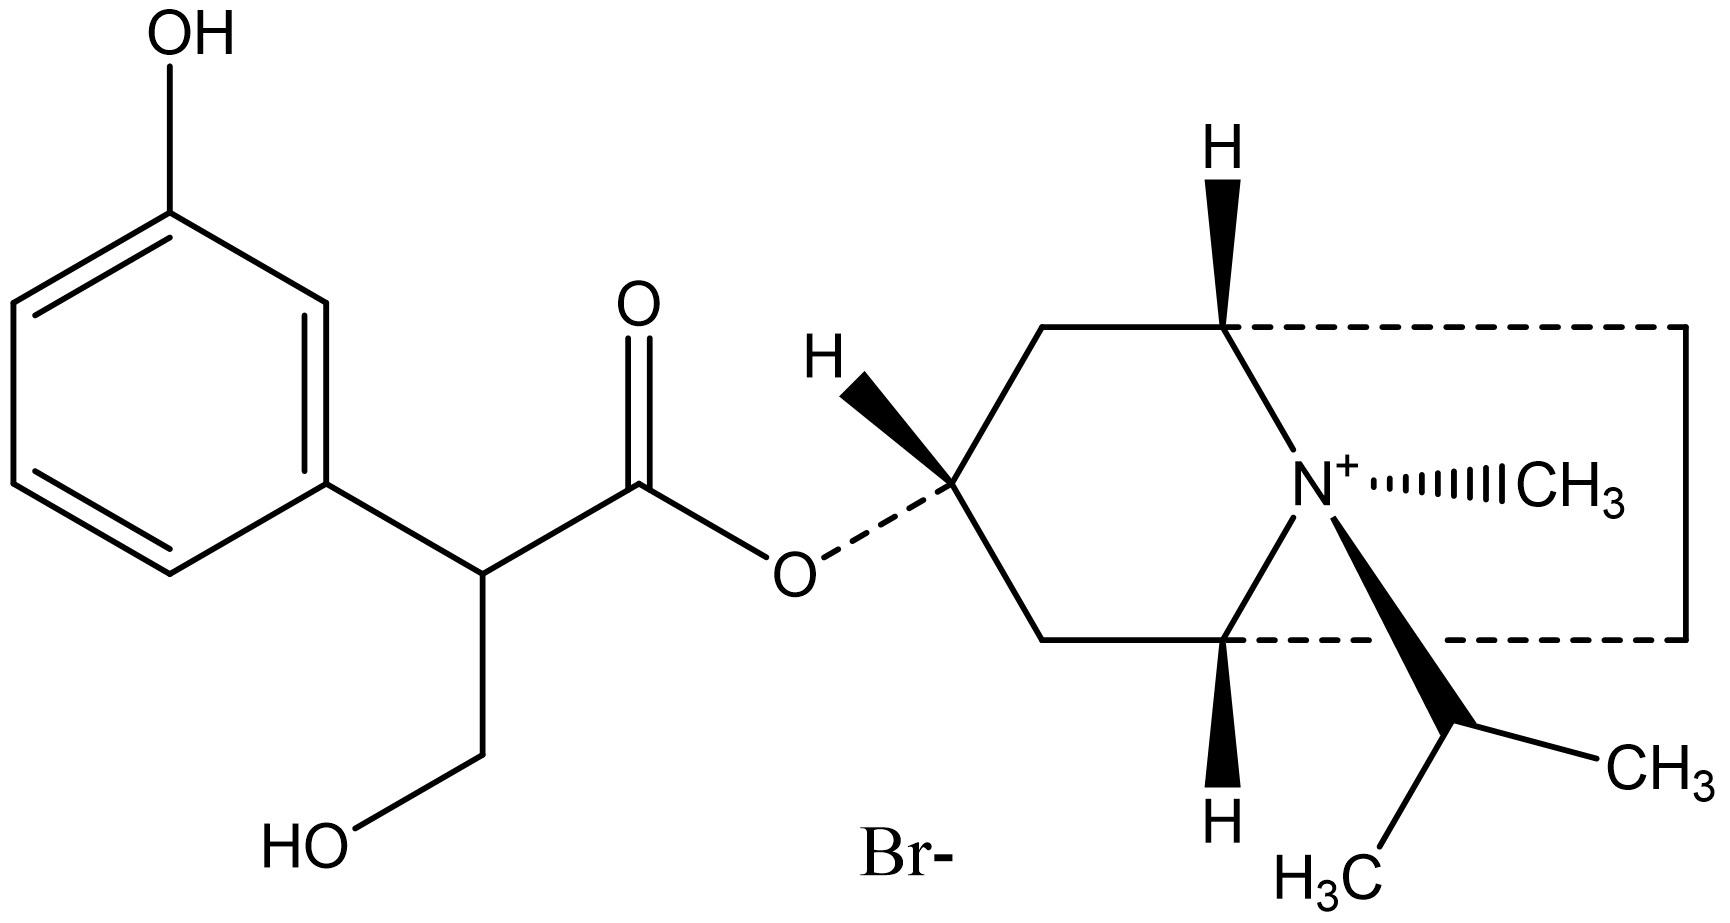 3-Hydroxy Ipratropium Bromide